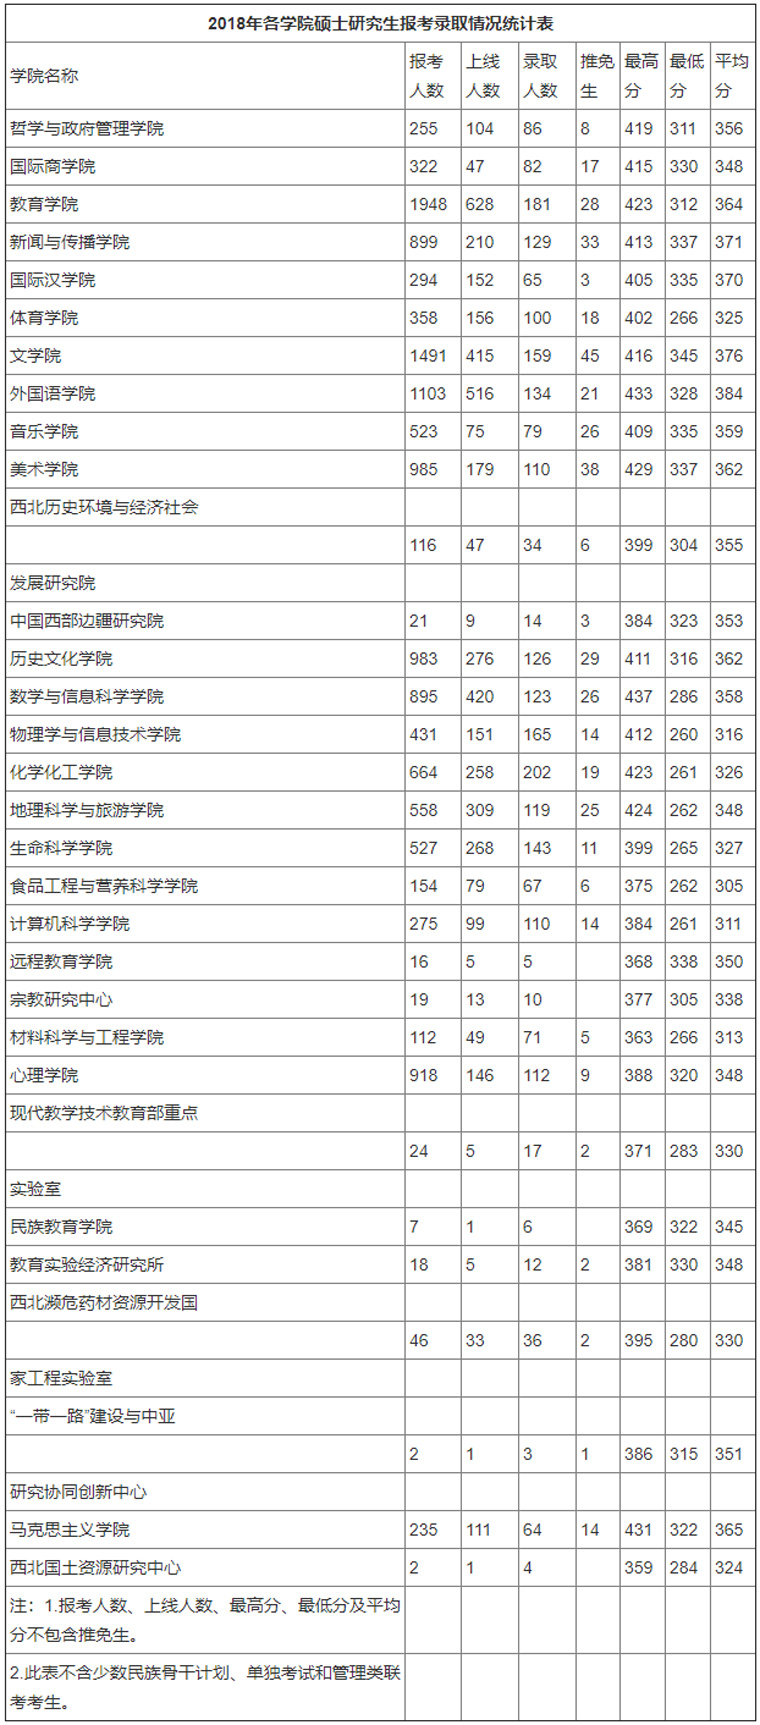 陕西师范大学2018年各学院硕士研究生报考选取状况统计表